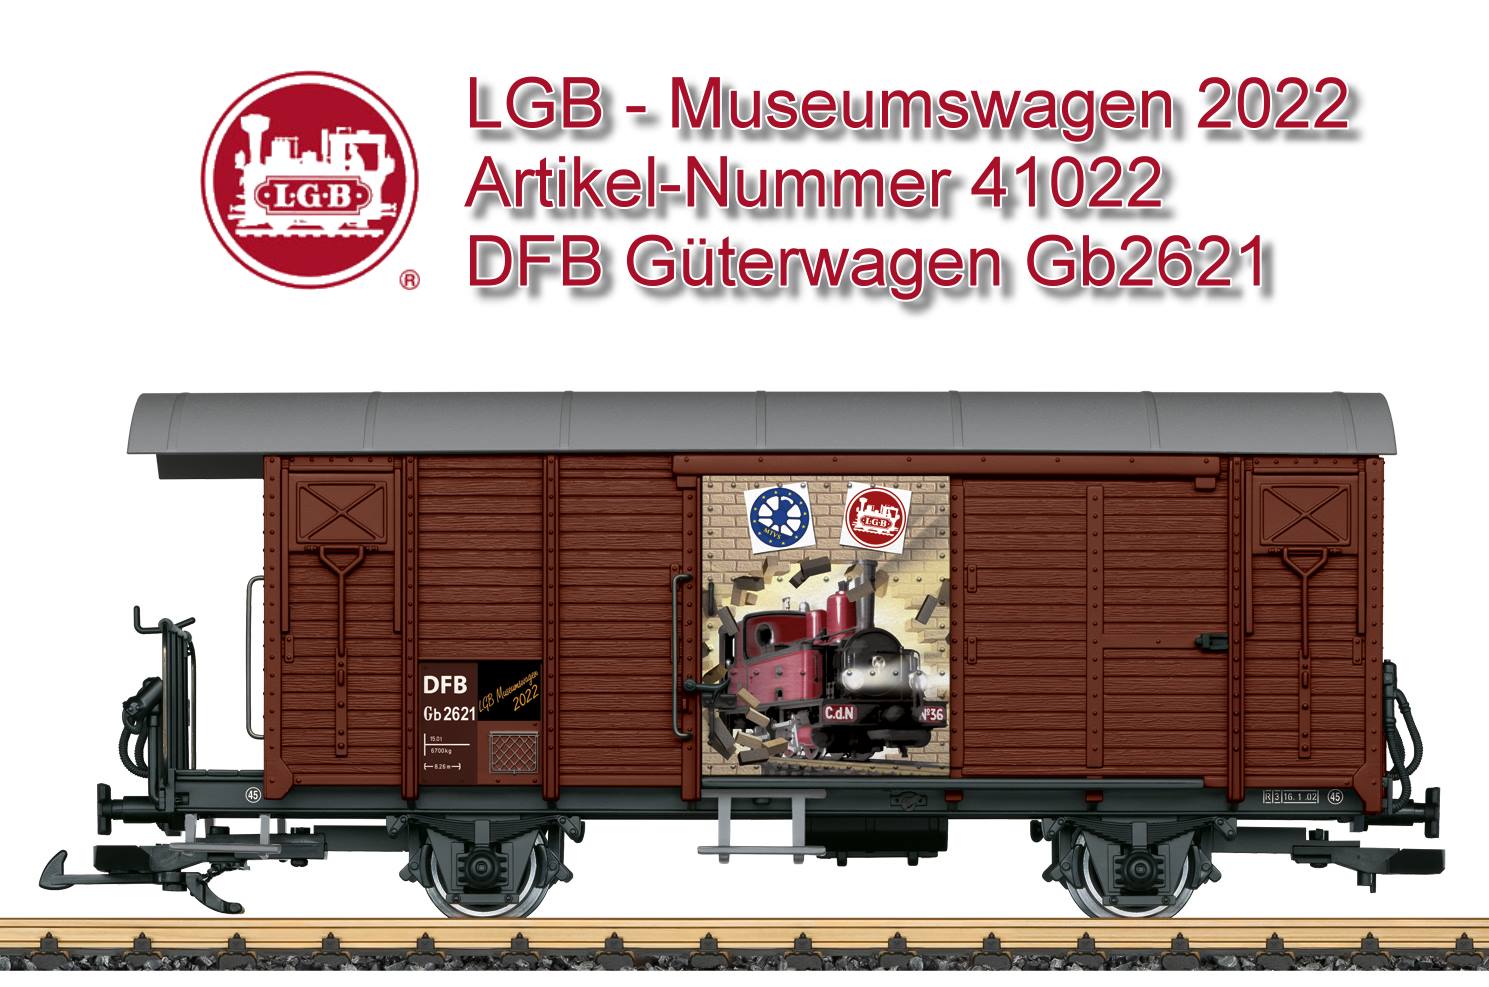 LGB Museumswagen 2022 - LGB Art. Nr. 41022 - nur erhältlich im Märklineum 